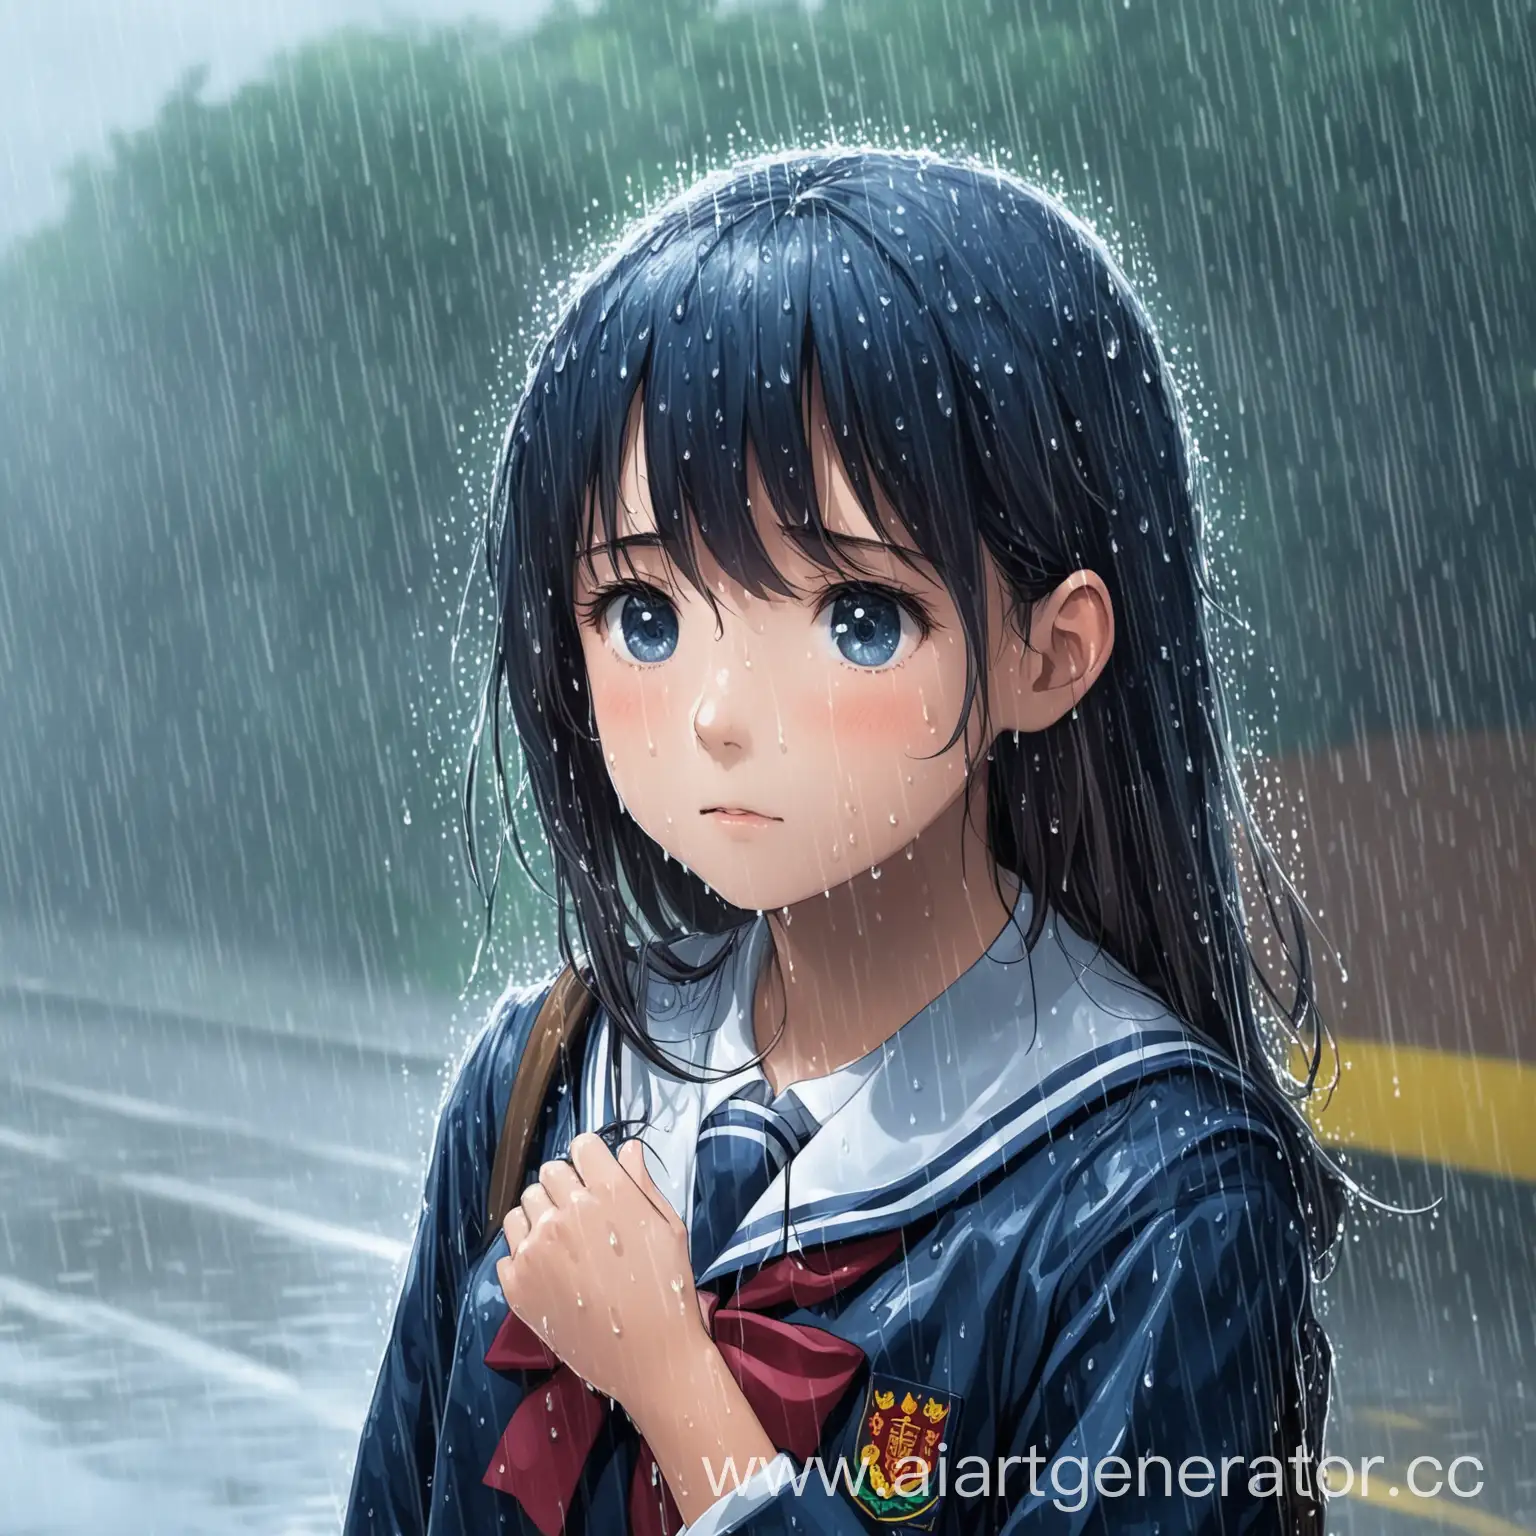 Schoolgirl-in-Uniform-Walking-in-the-Rain